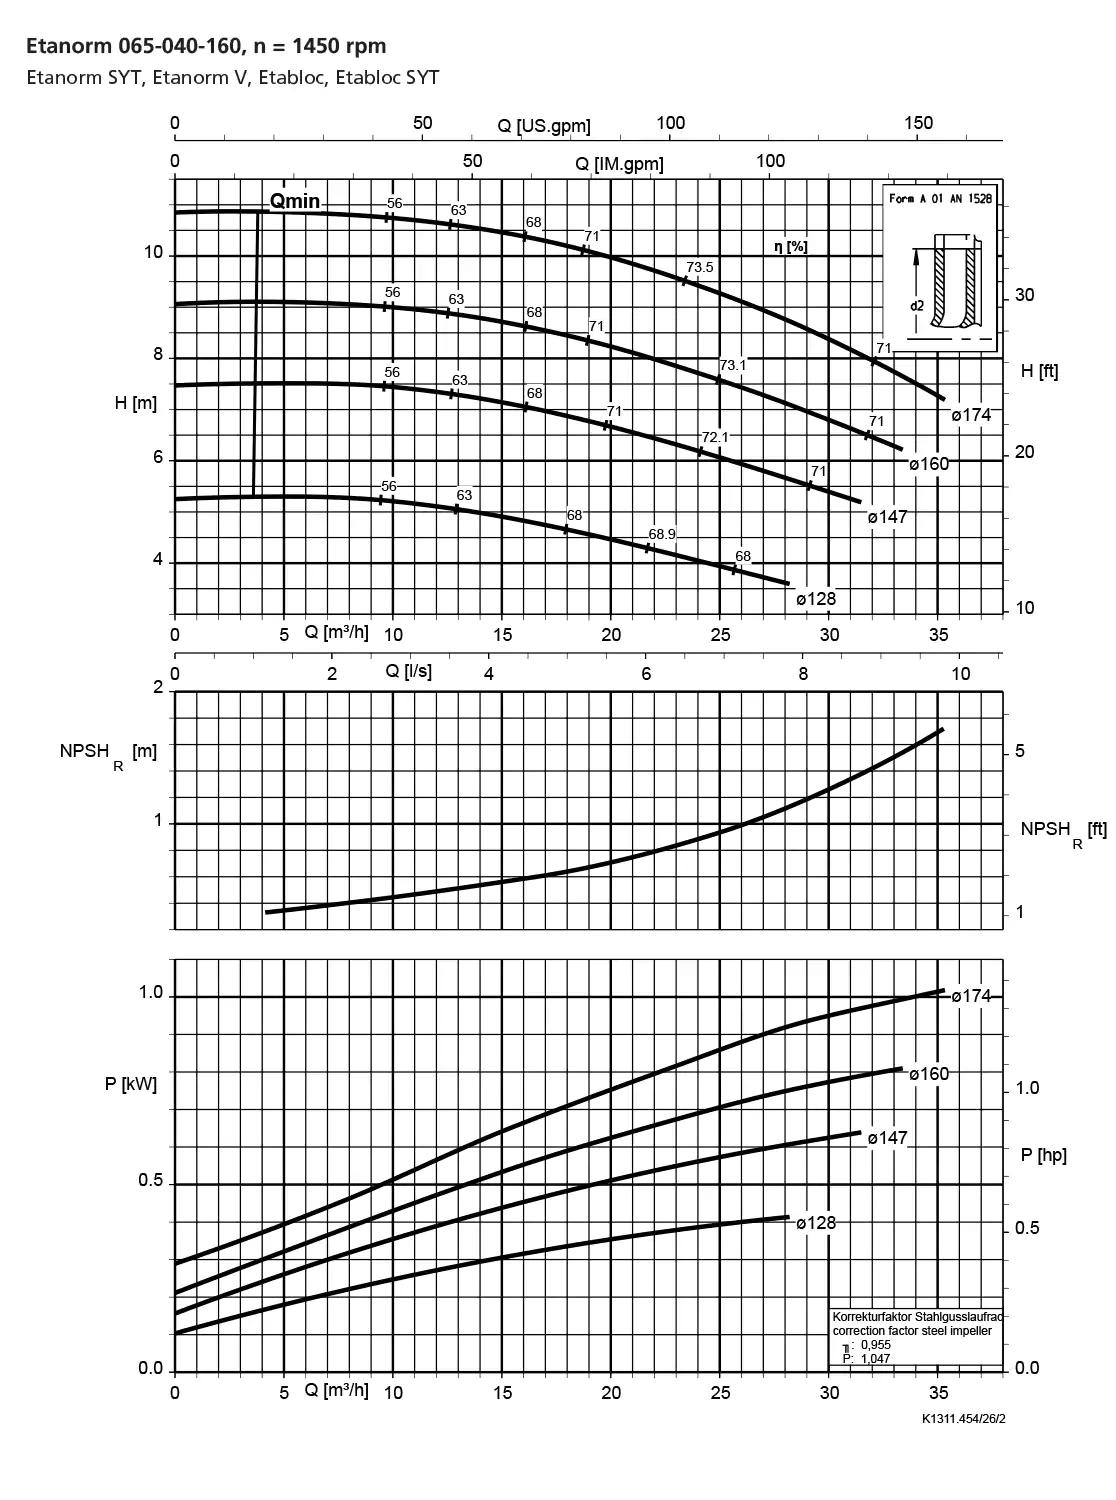 نمودار-کارکرد-پمپ-etanorm-syt-65-040-160-1450